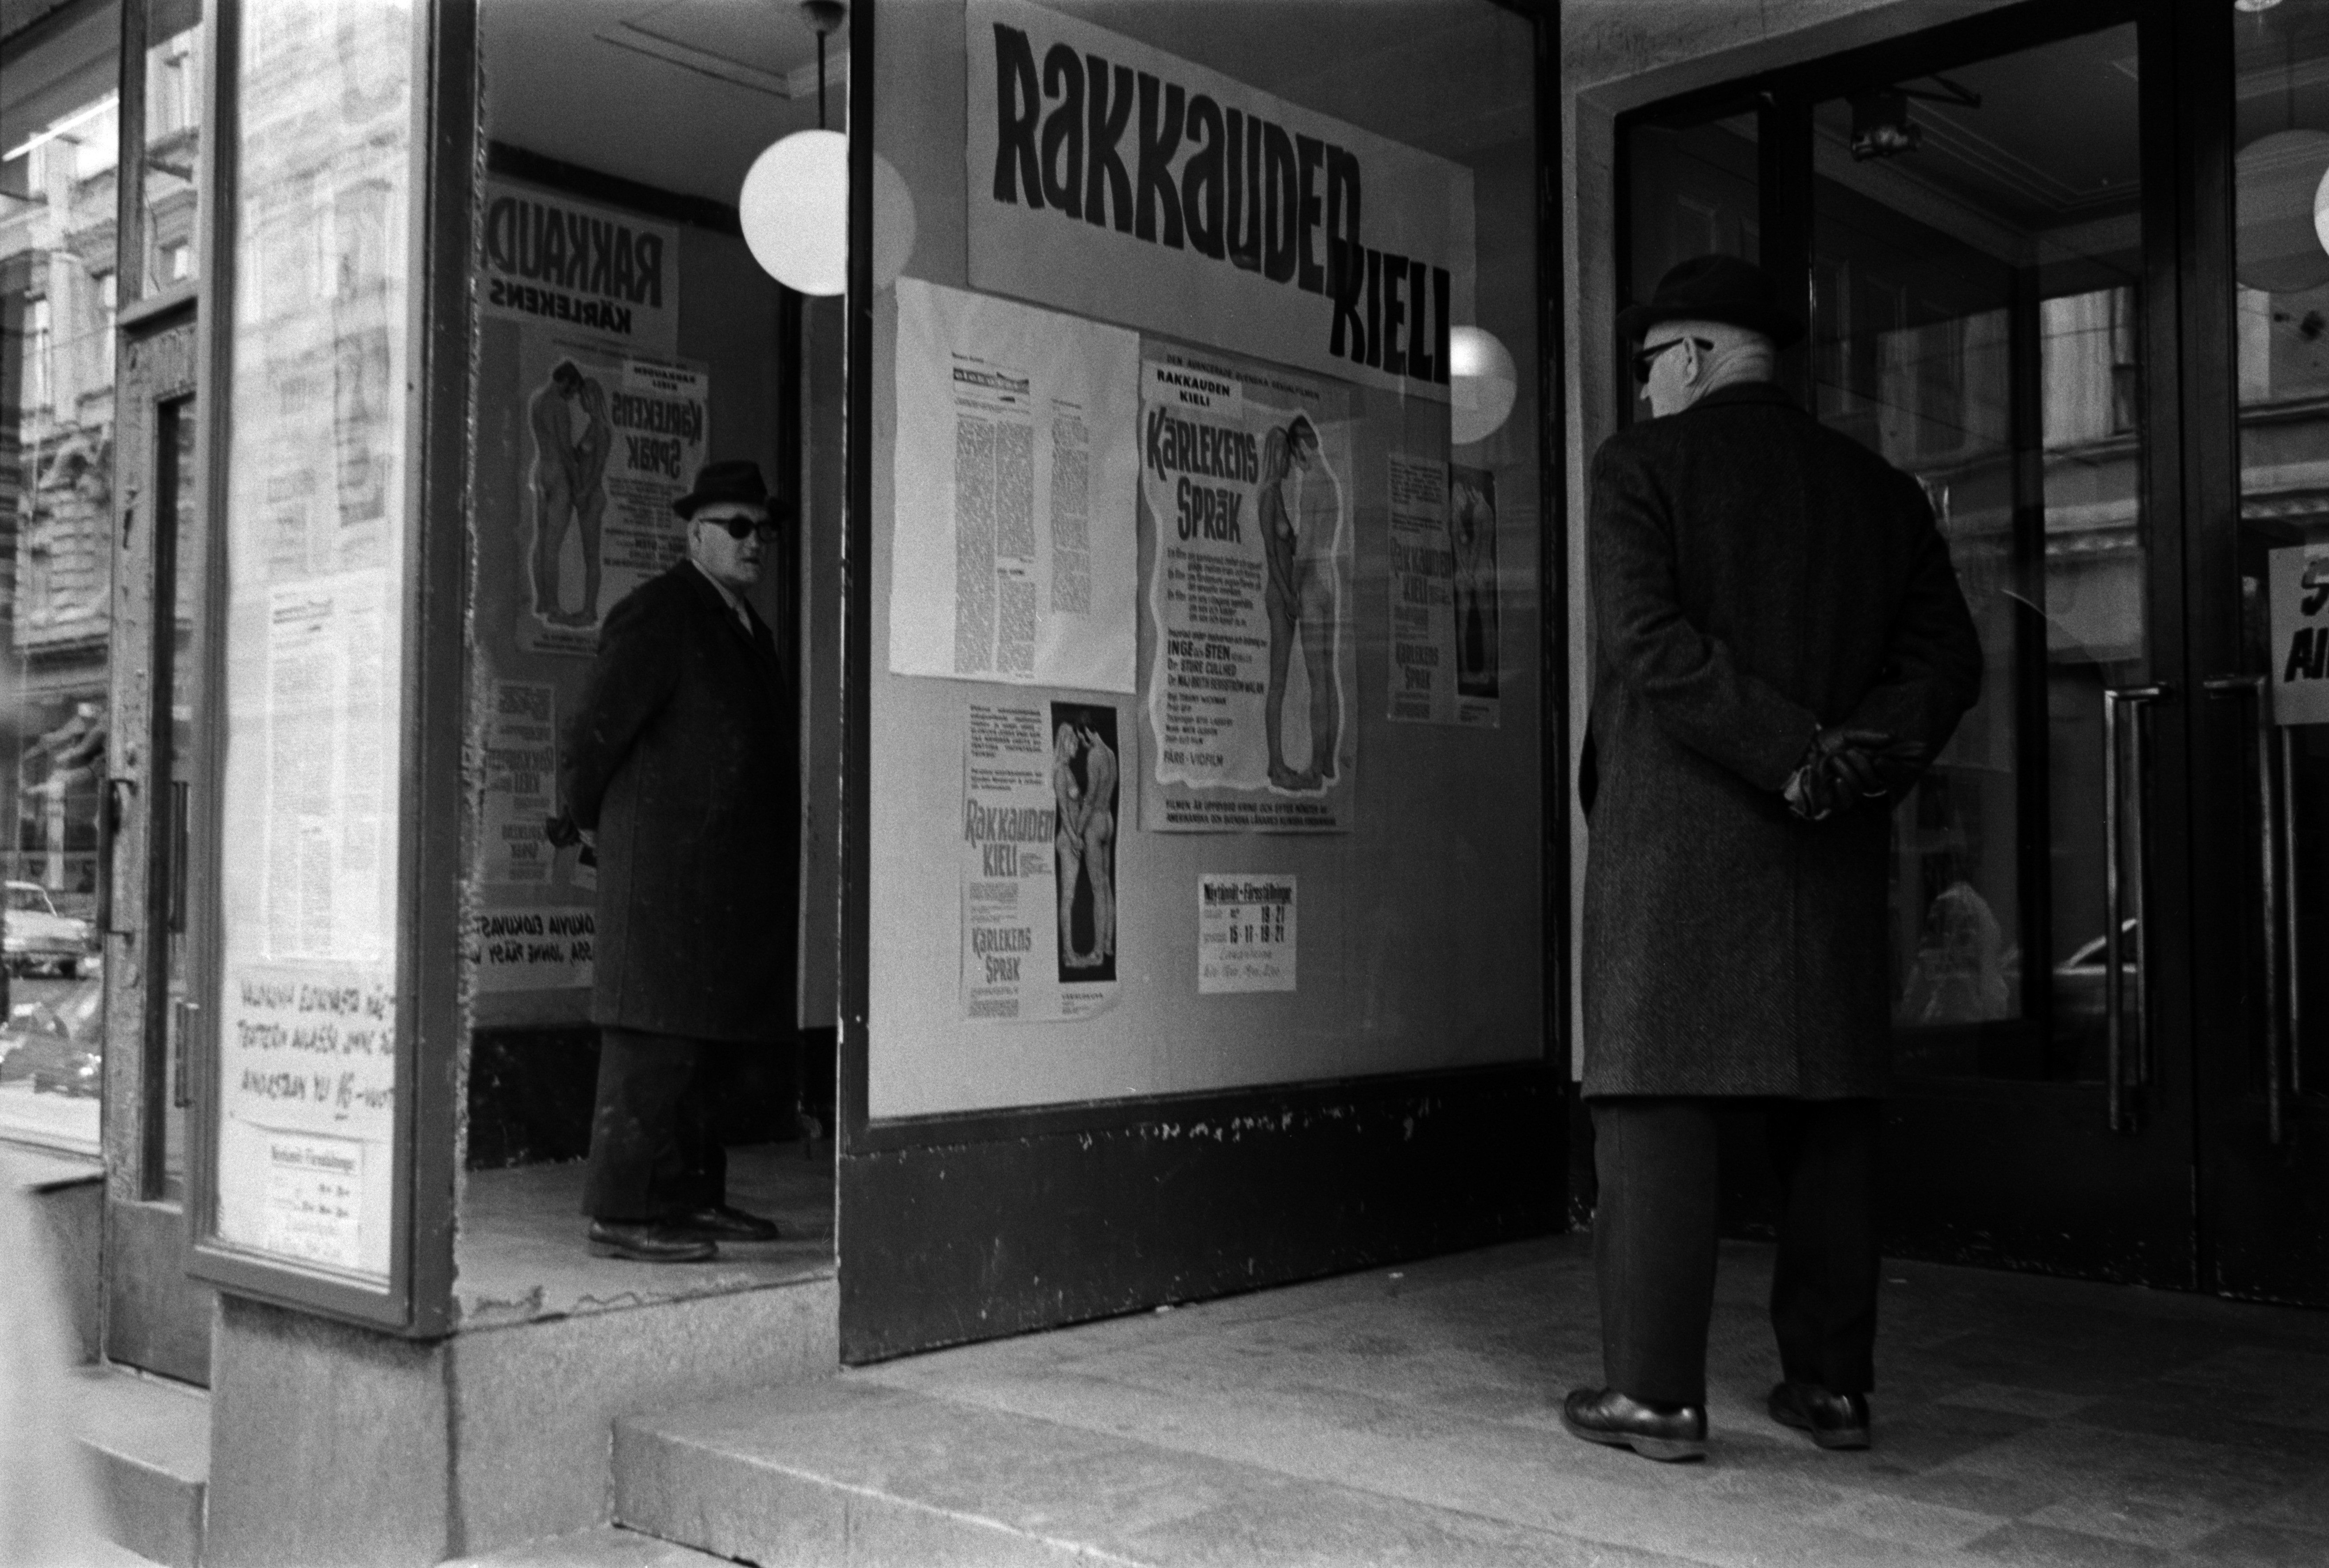 Iso Roobertinkatu 14. Mies katselemassa Rakkauden kieli -elokuvan mainoksia elokuvateatteri Astorin sisäänkäynnin edessä Iso Roobertinkadulla.